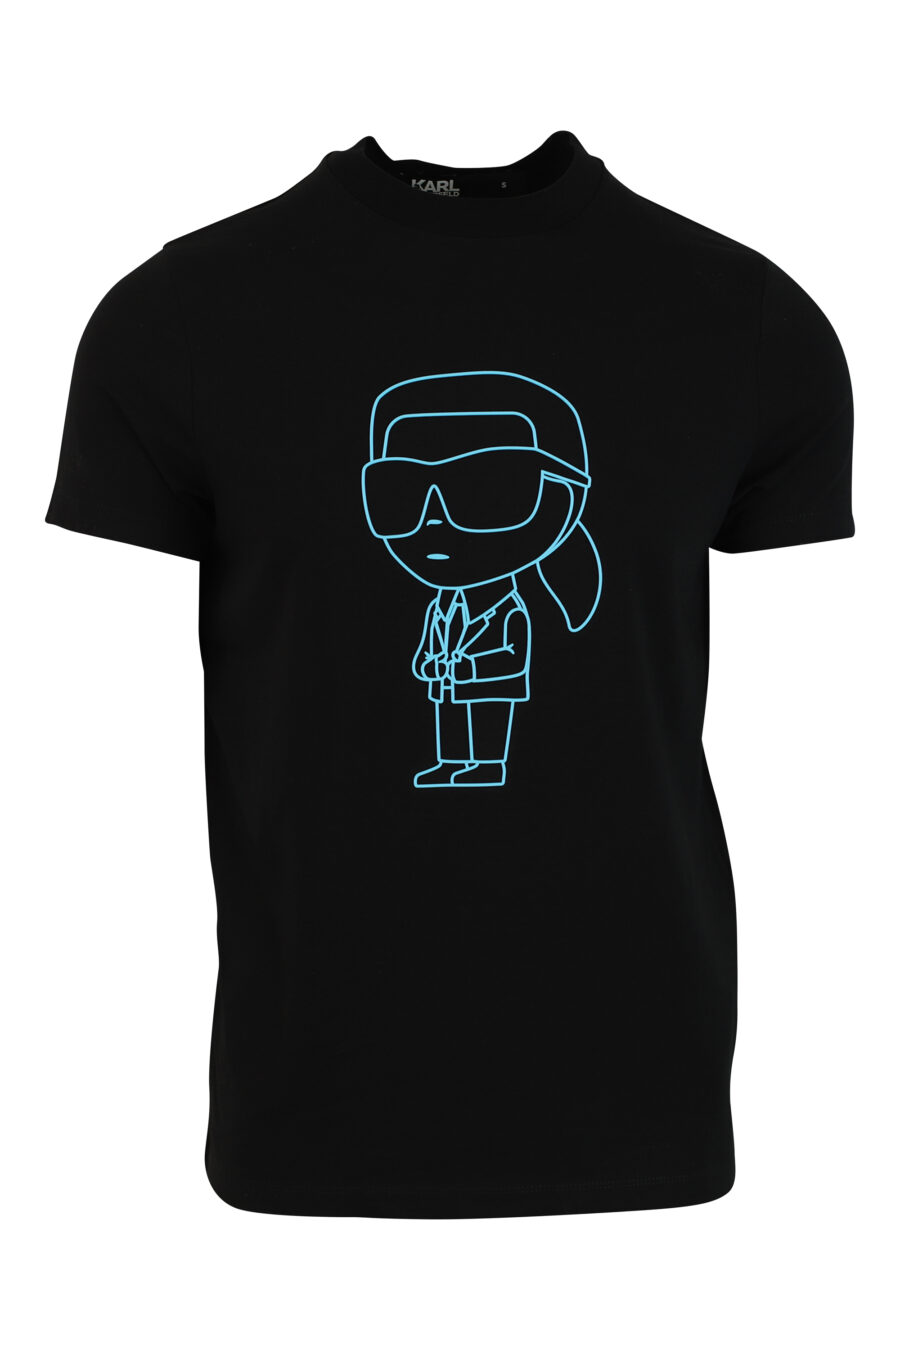 Schwarzes T-Shirt mit Maxilogo in blauer Silhouette - 4062226292504